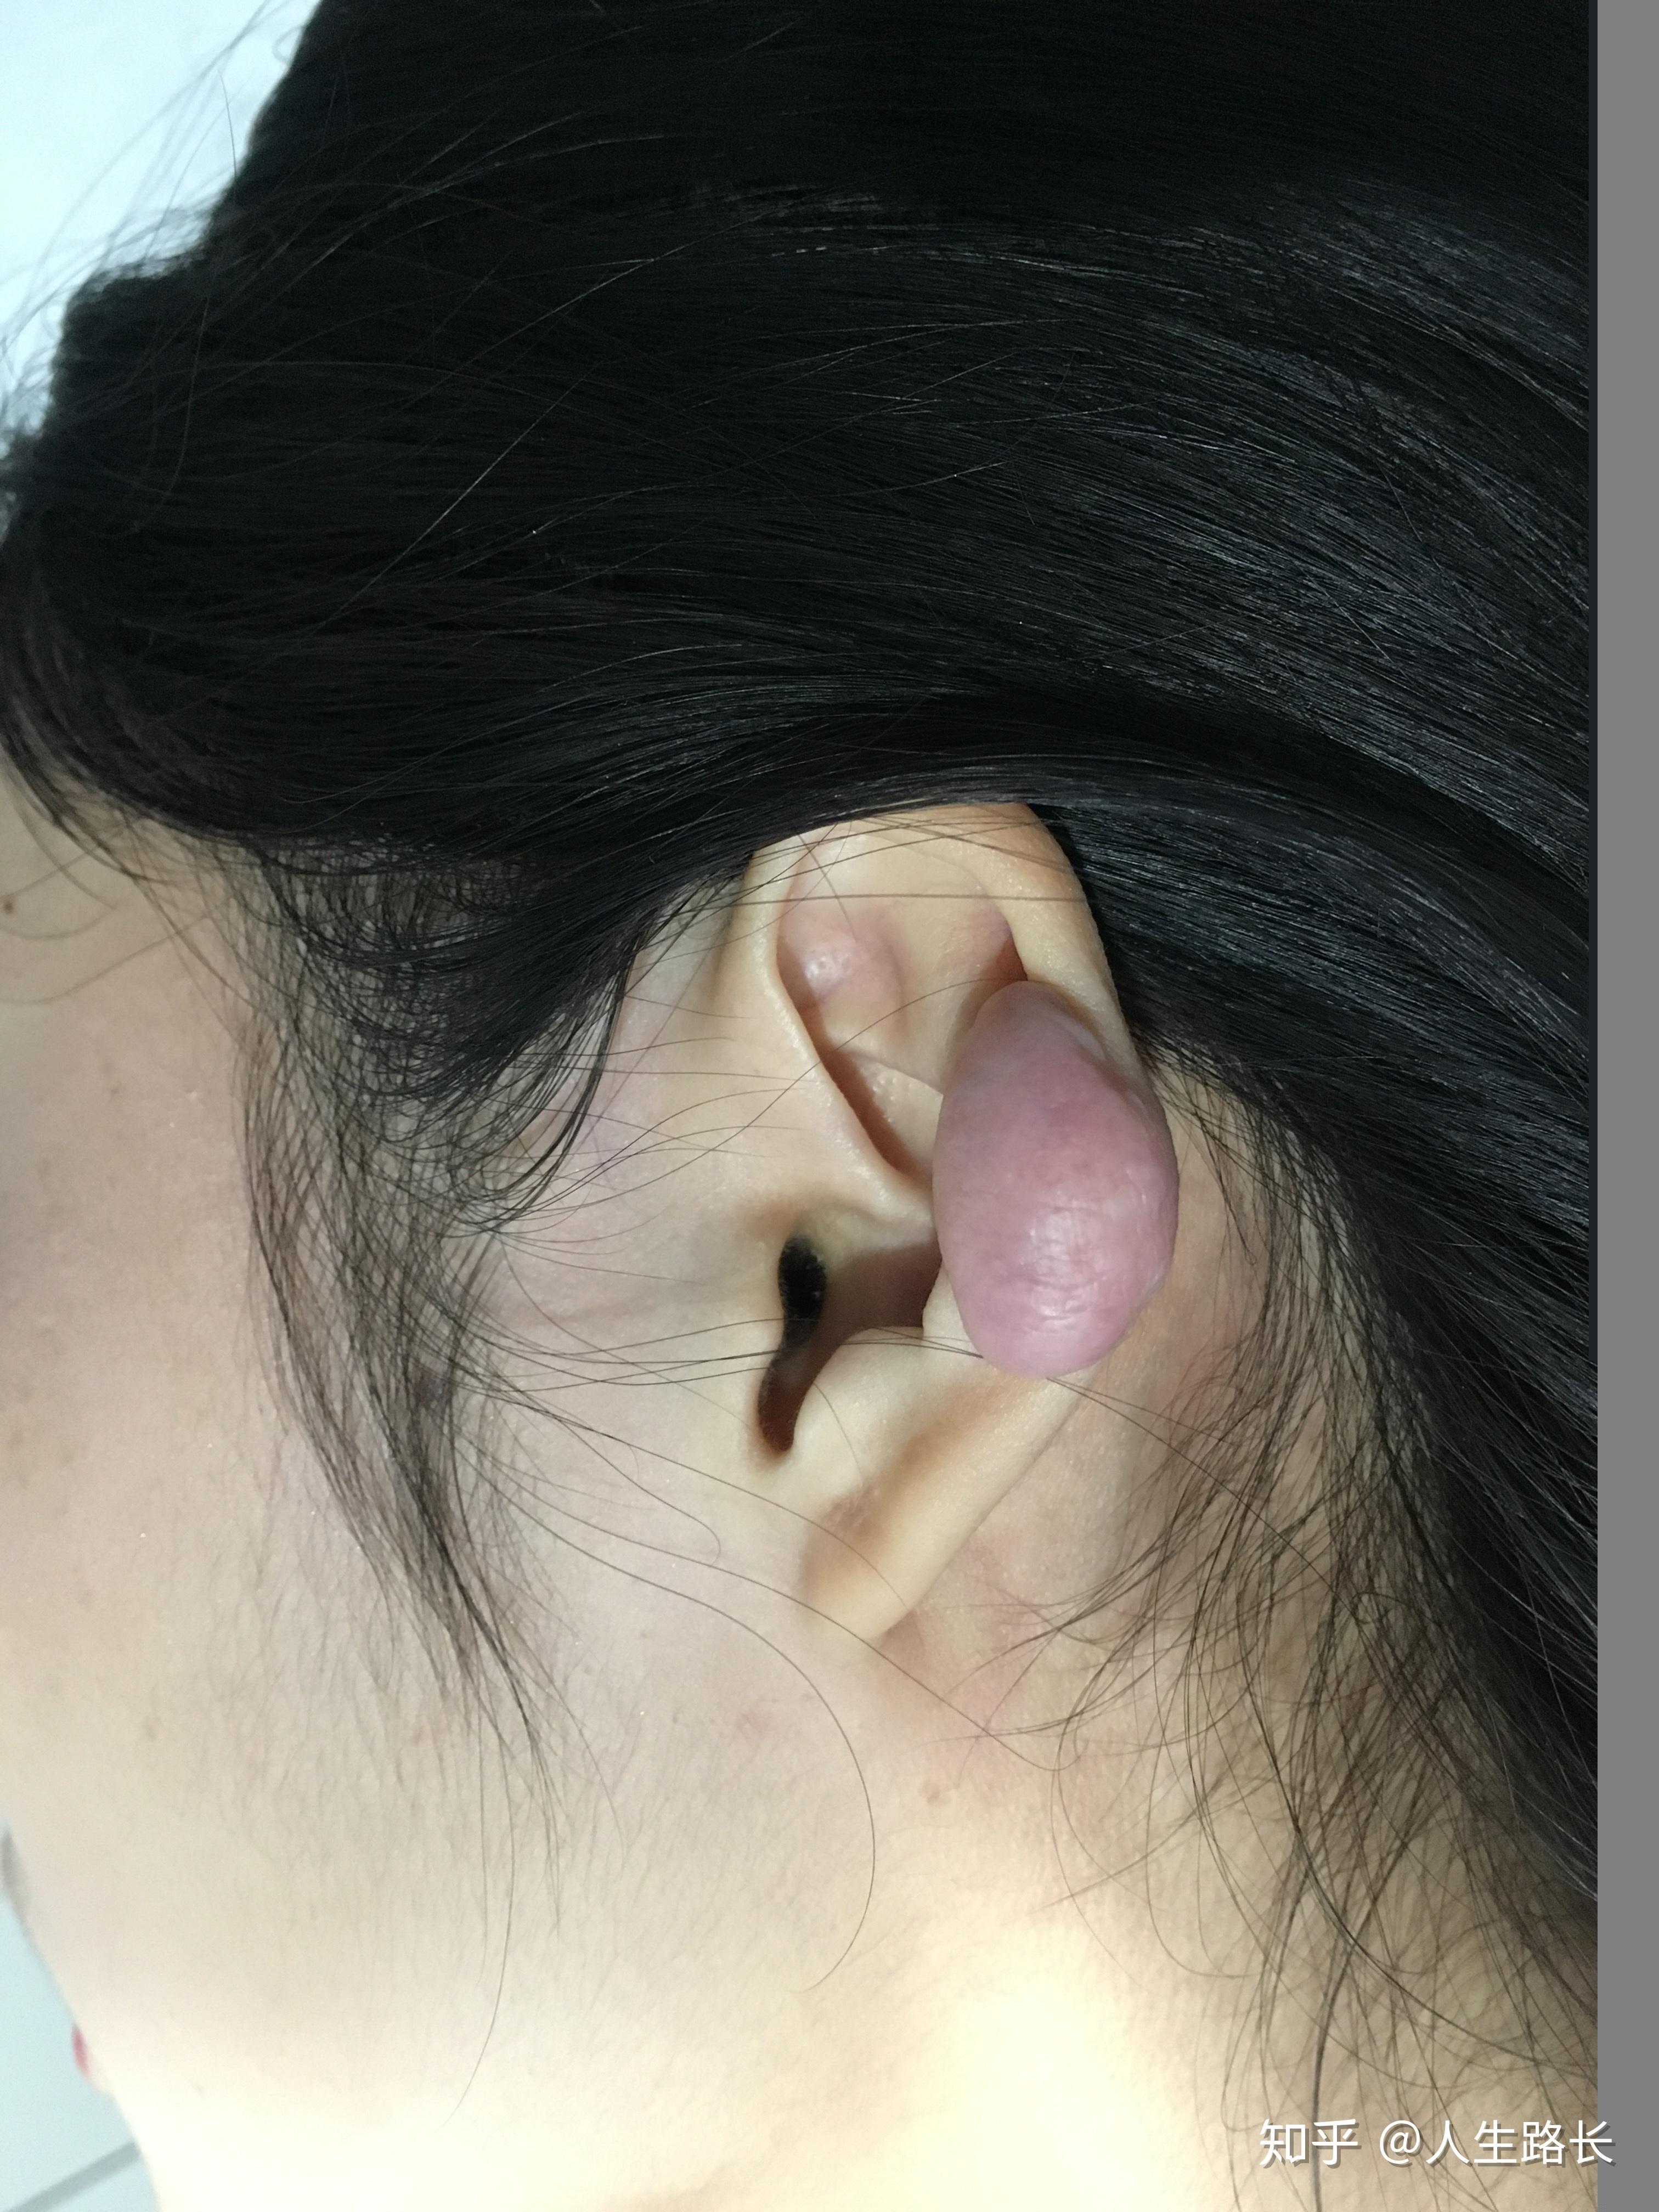 耳部疙瘩切除后多久就不易复发?